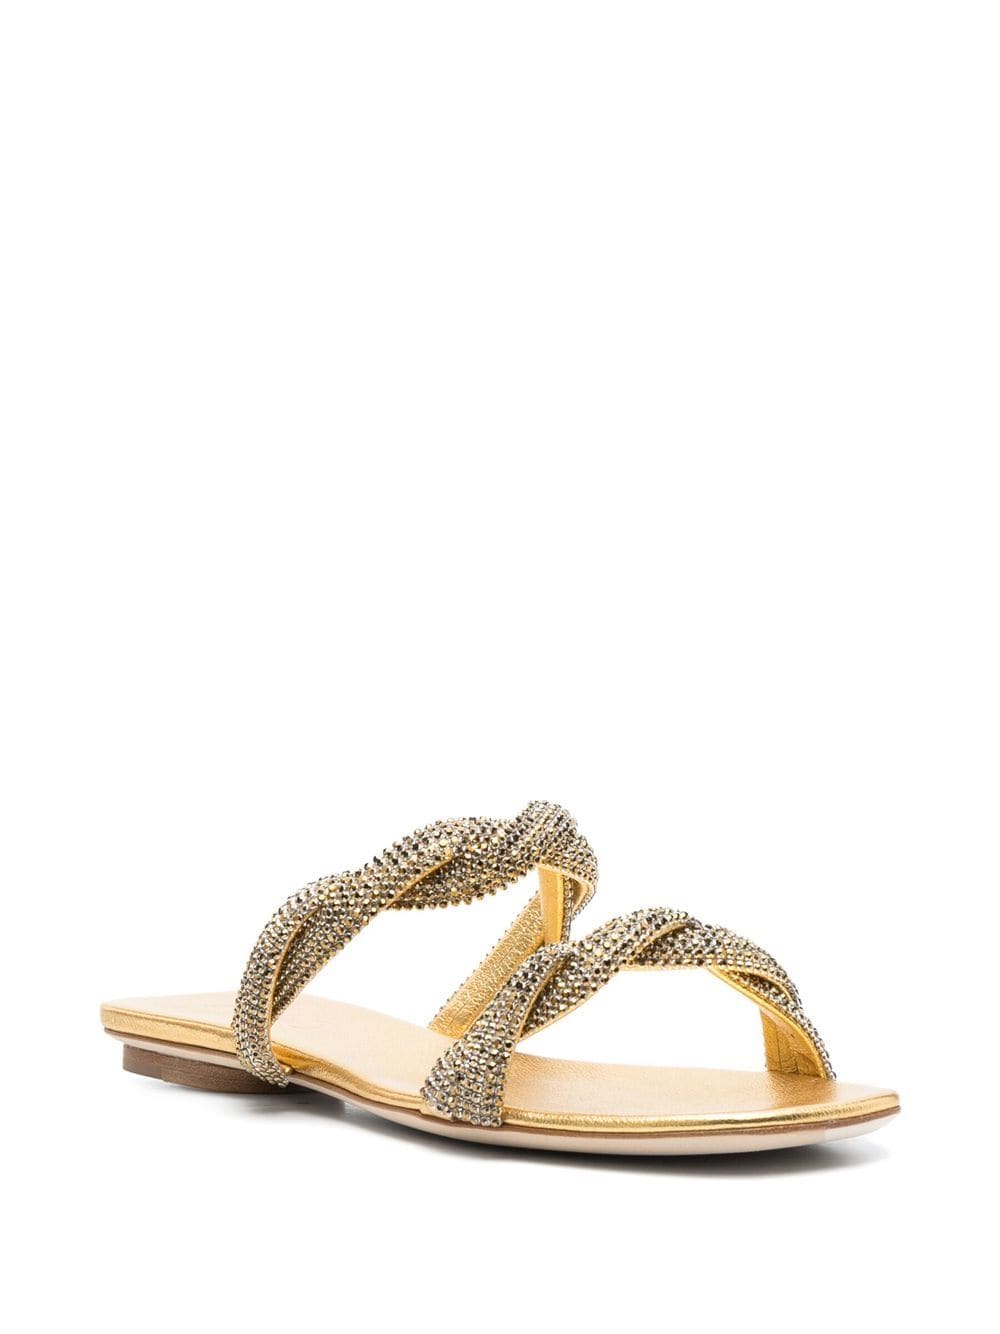 rodo embellished flat sandals - gold